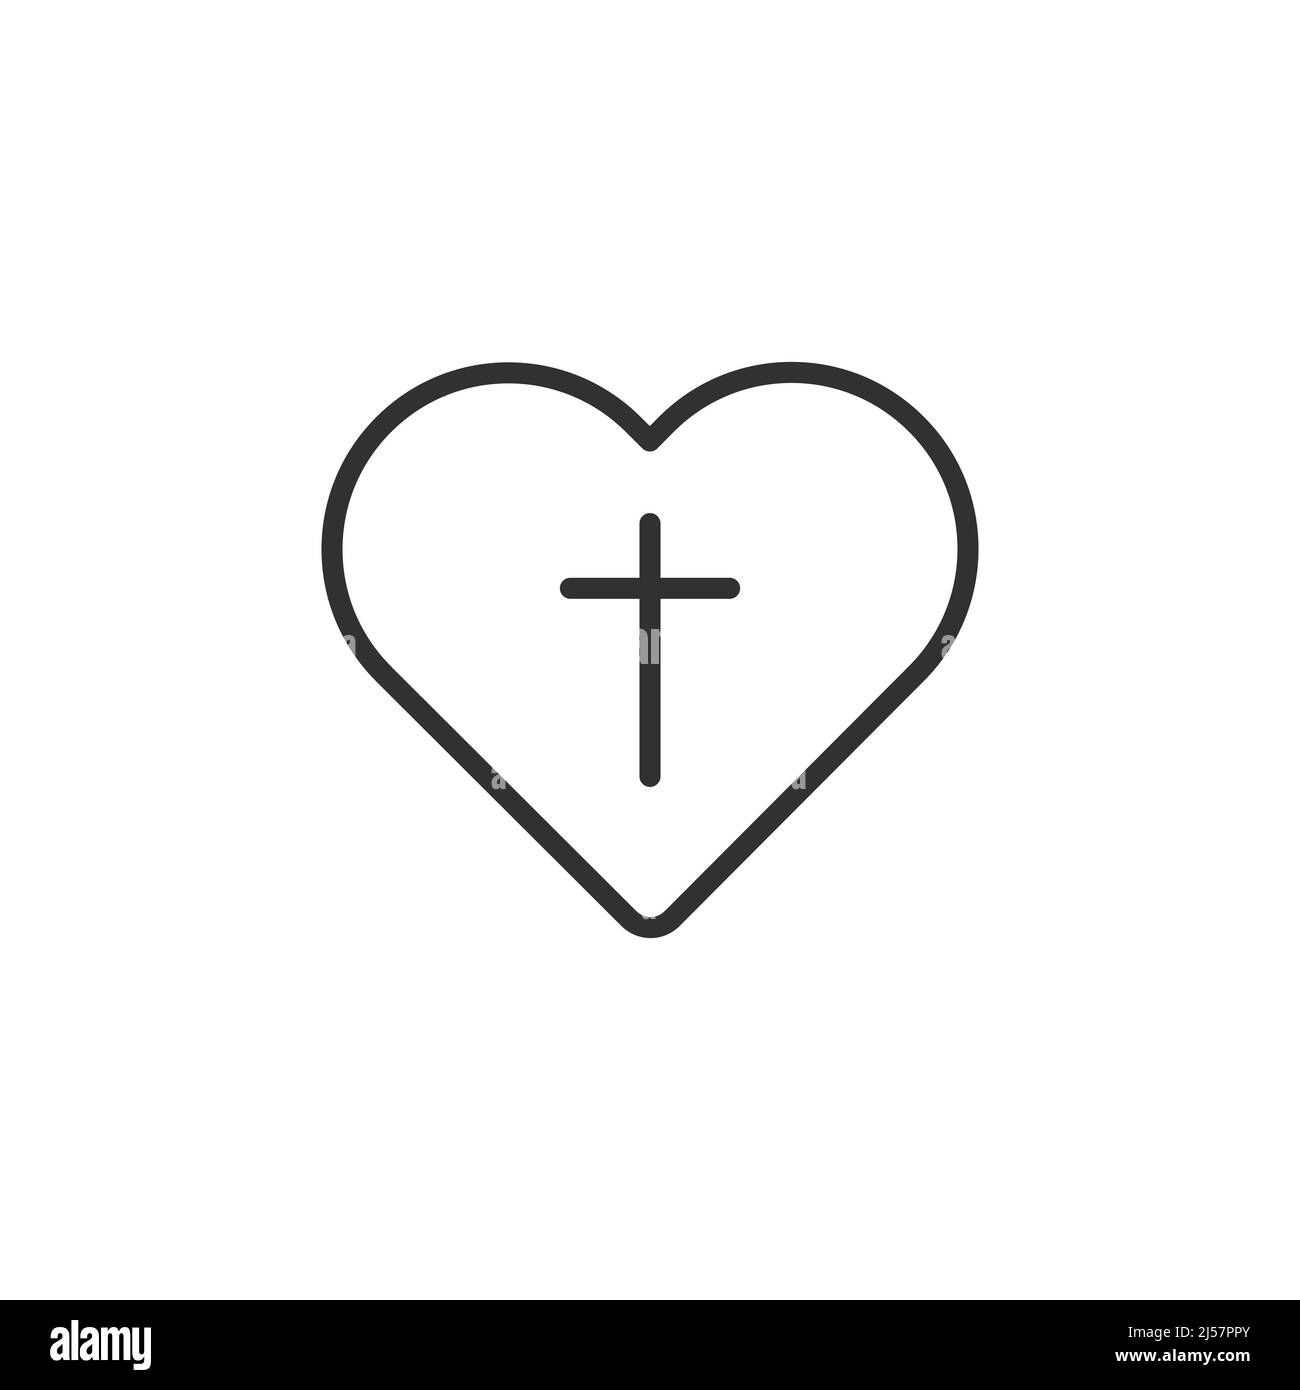 Croix chrétienne à l'intérieur de coeur icône. Croix chrétienne noire isolée sur fond clair. Illustration vectorielle Illustration de Vecteur